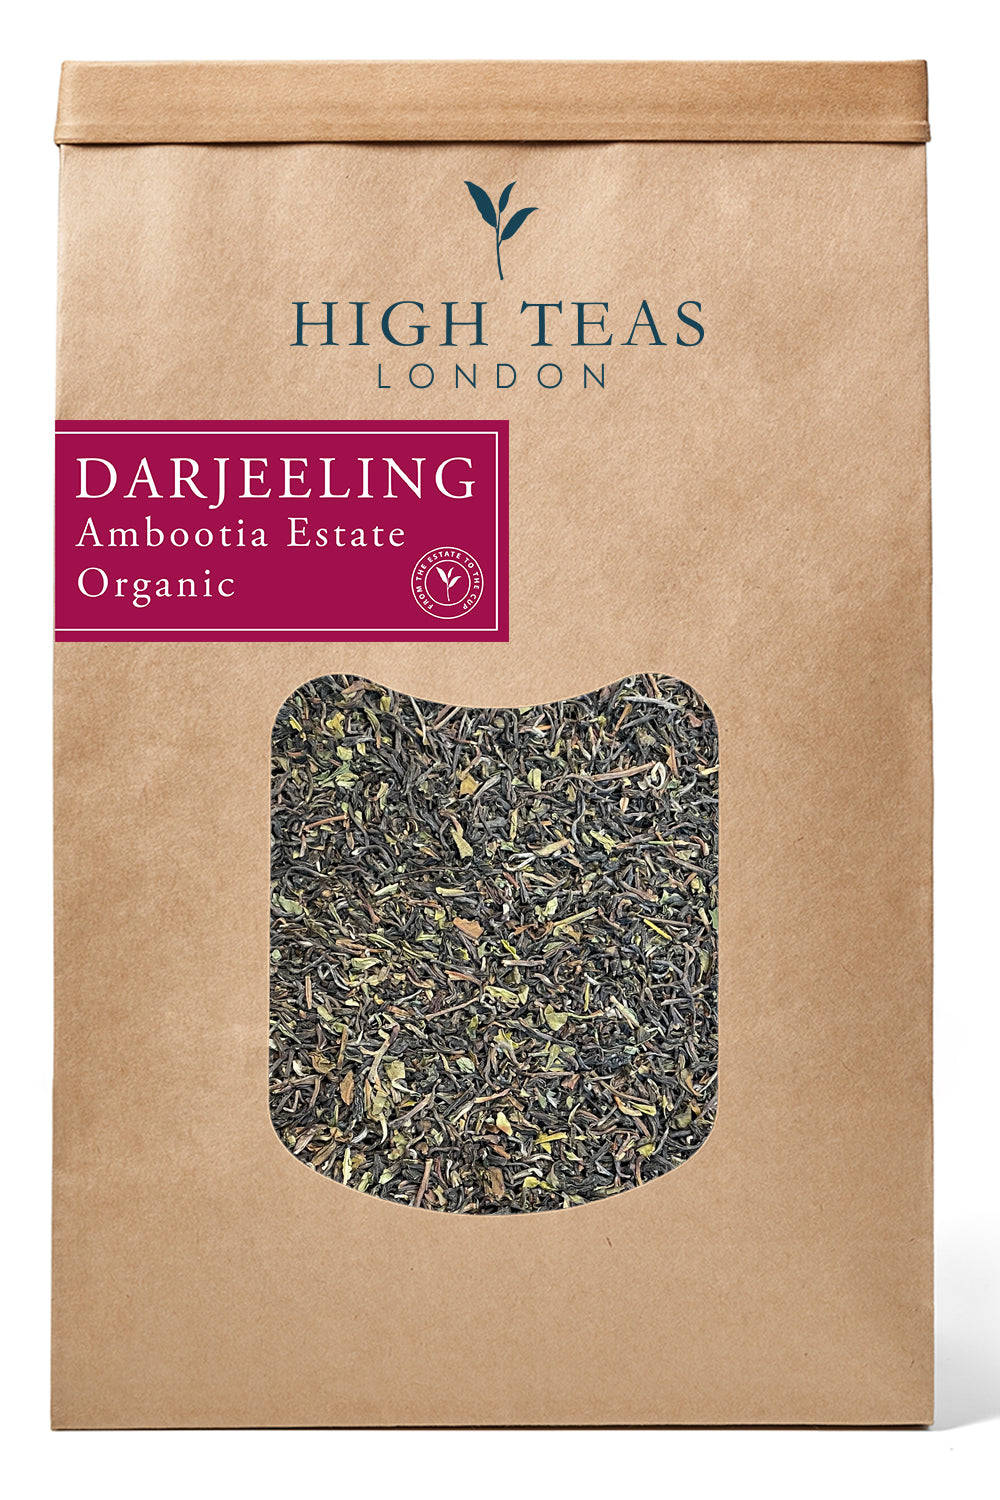 Darjeeling Ambootia Estate 1st Flush SFTGFOP1 Organic-500g-Loose Leaf Tea-High Teas